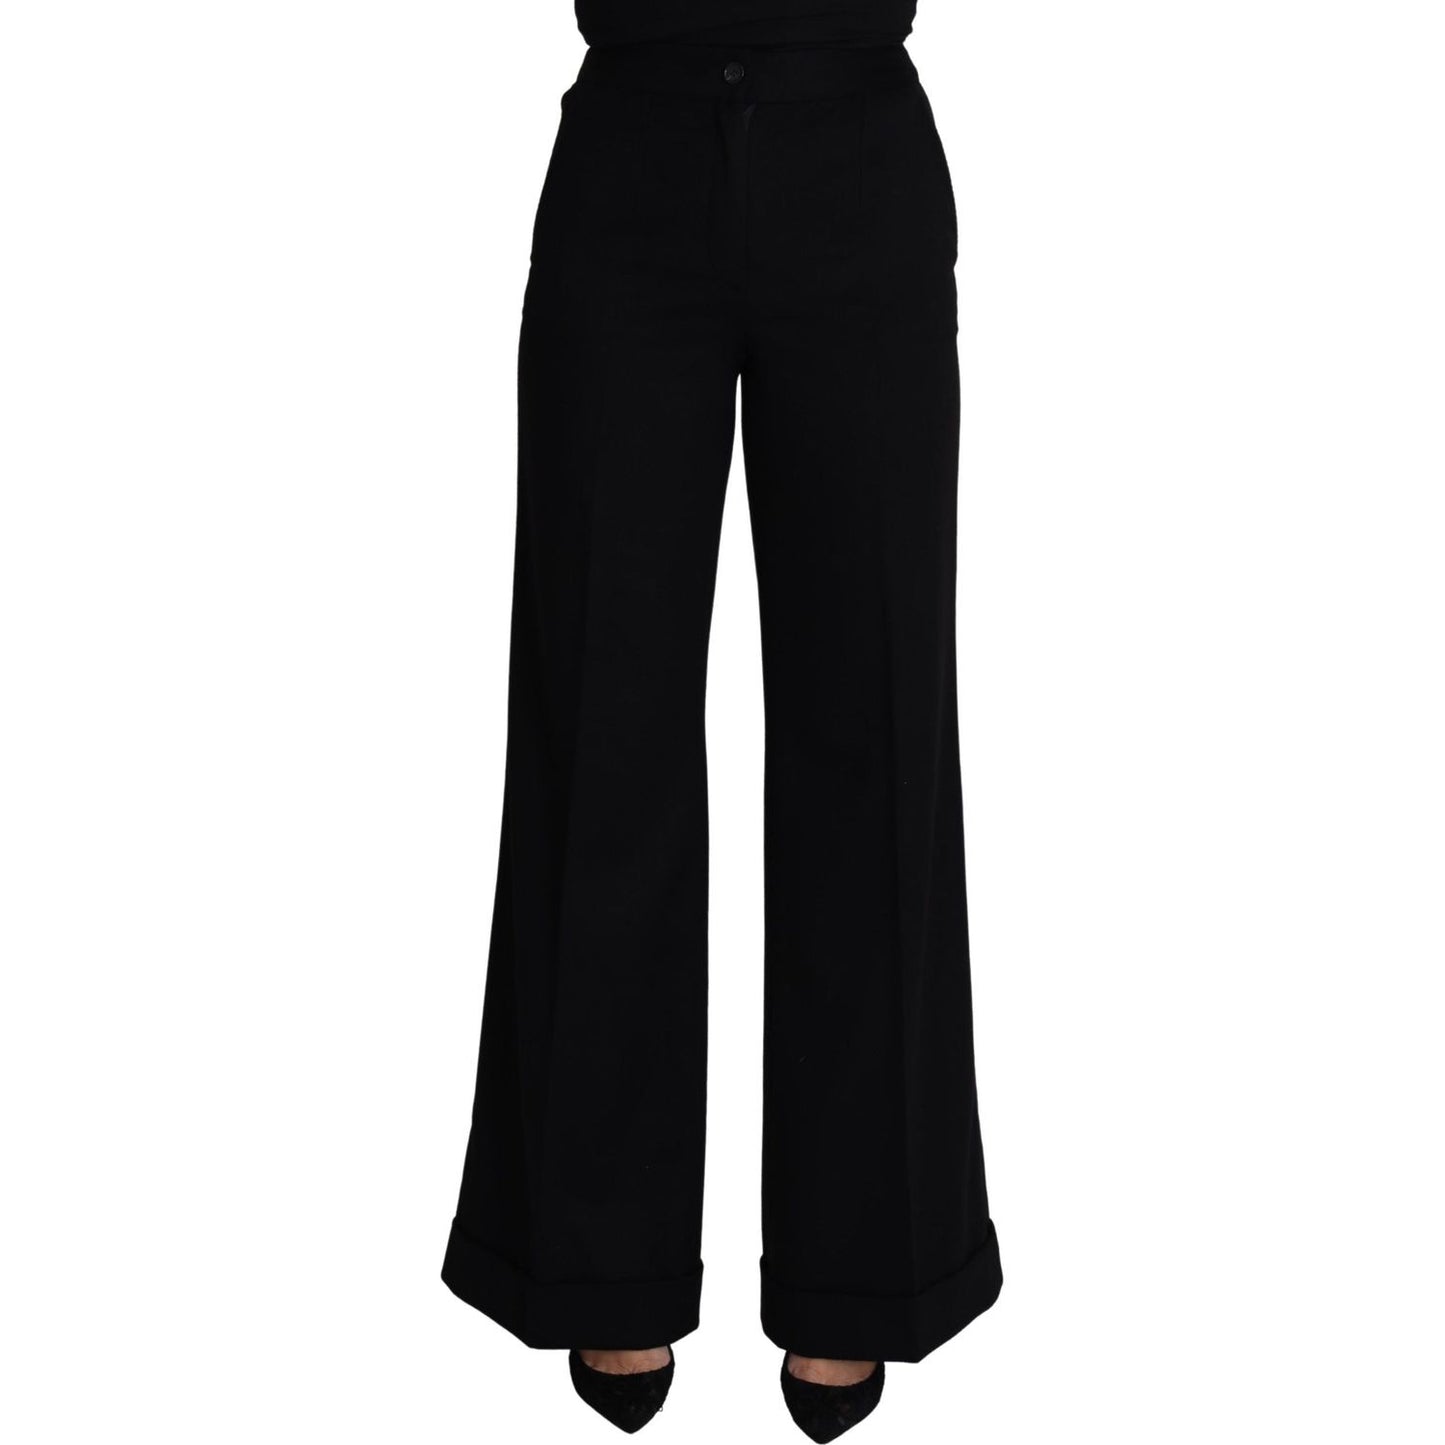 Dolce & Gabbana Elegant Cashmere Wide Leg Trousers Jeans & Pants black-cashmere-wide-leg-women-trouser-pants